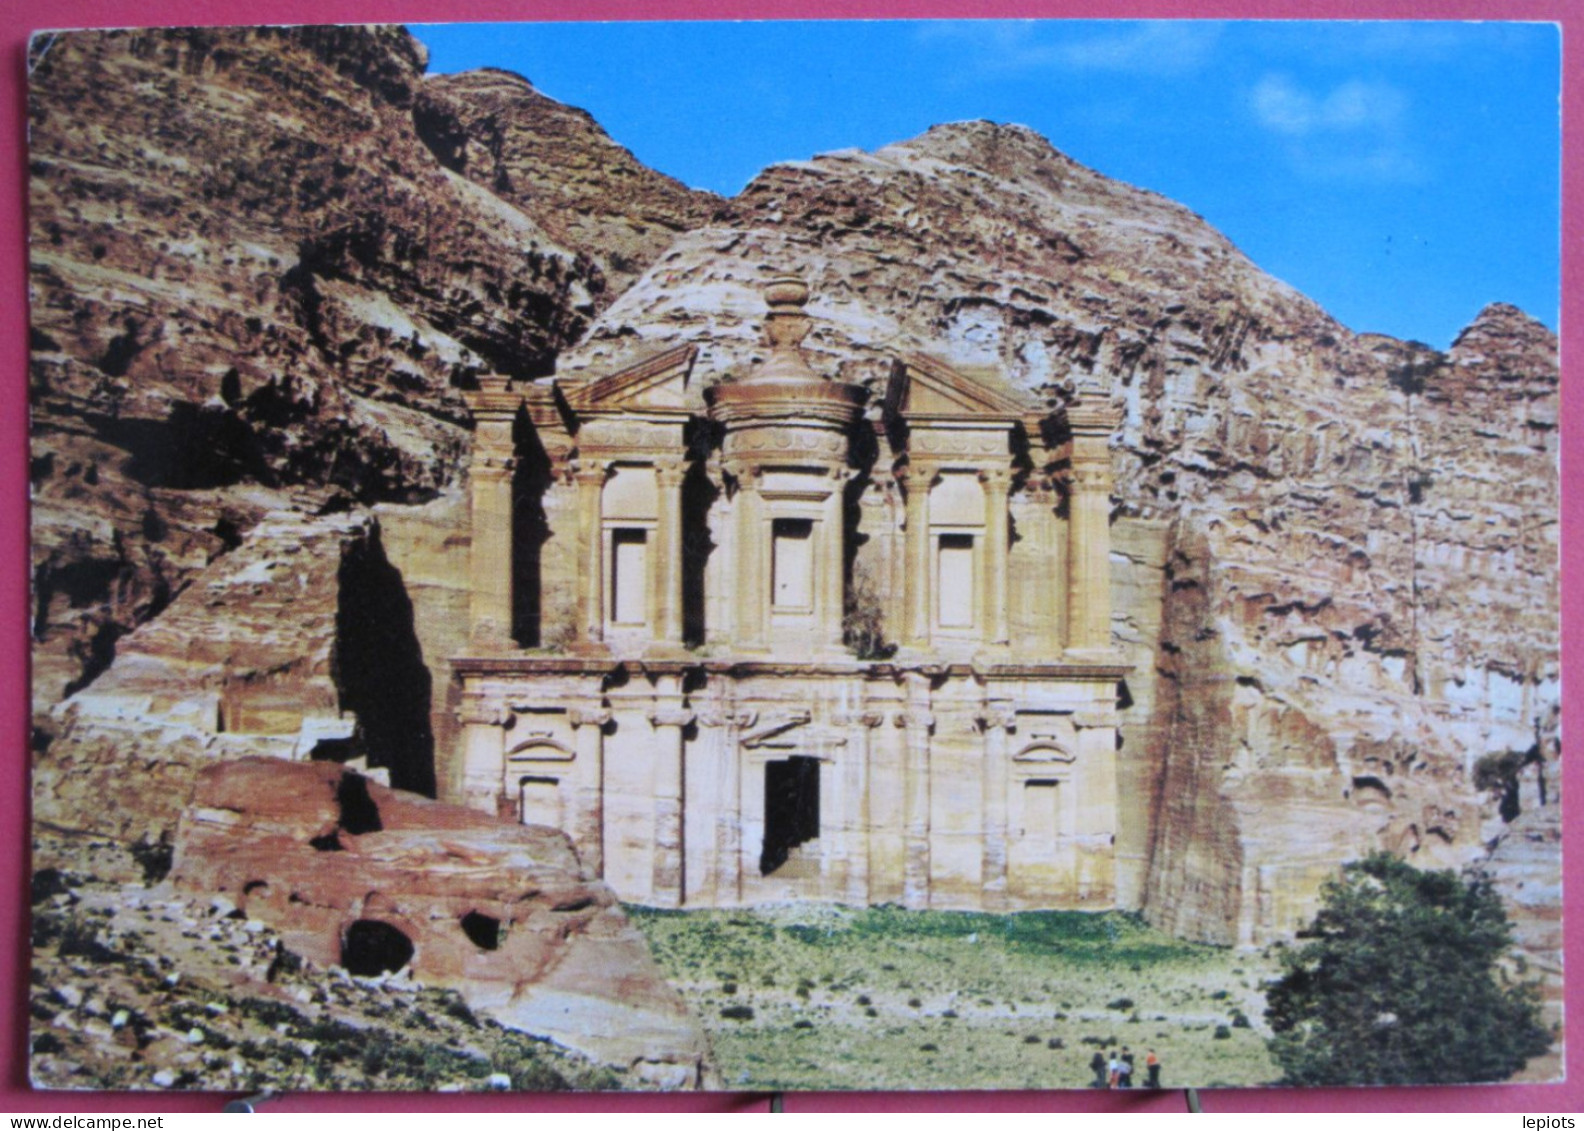 Jordanie - Ed-Deir - View Of Eddeer At Petra - Jordanien